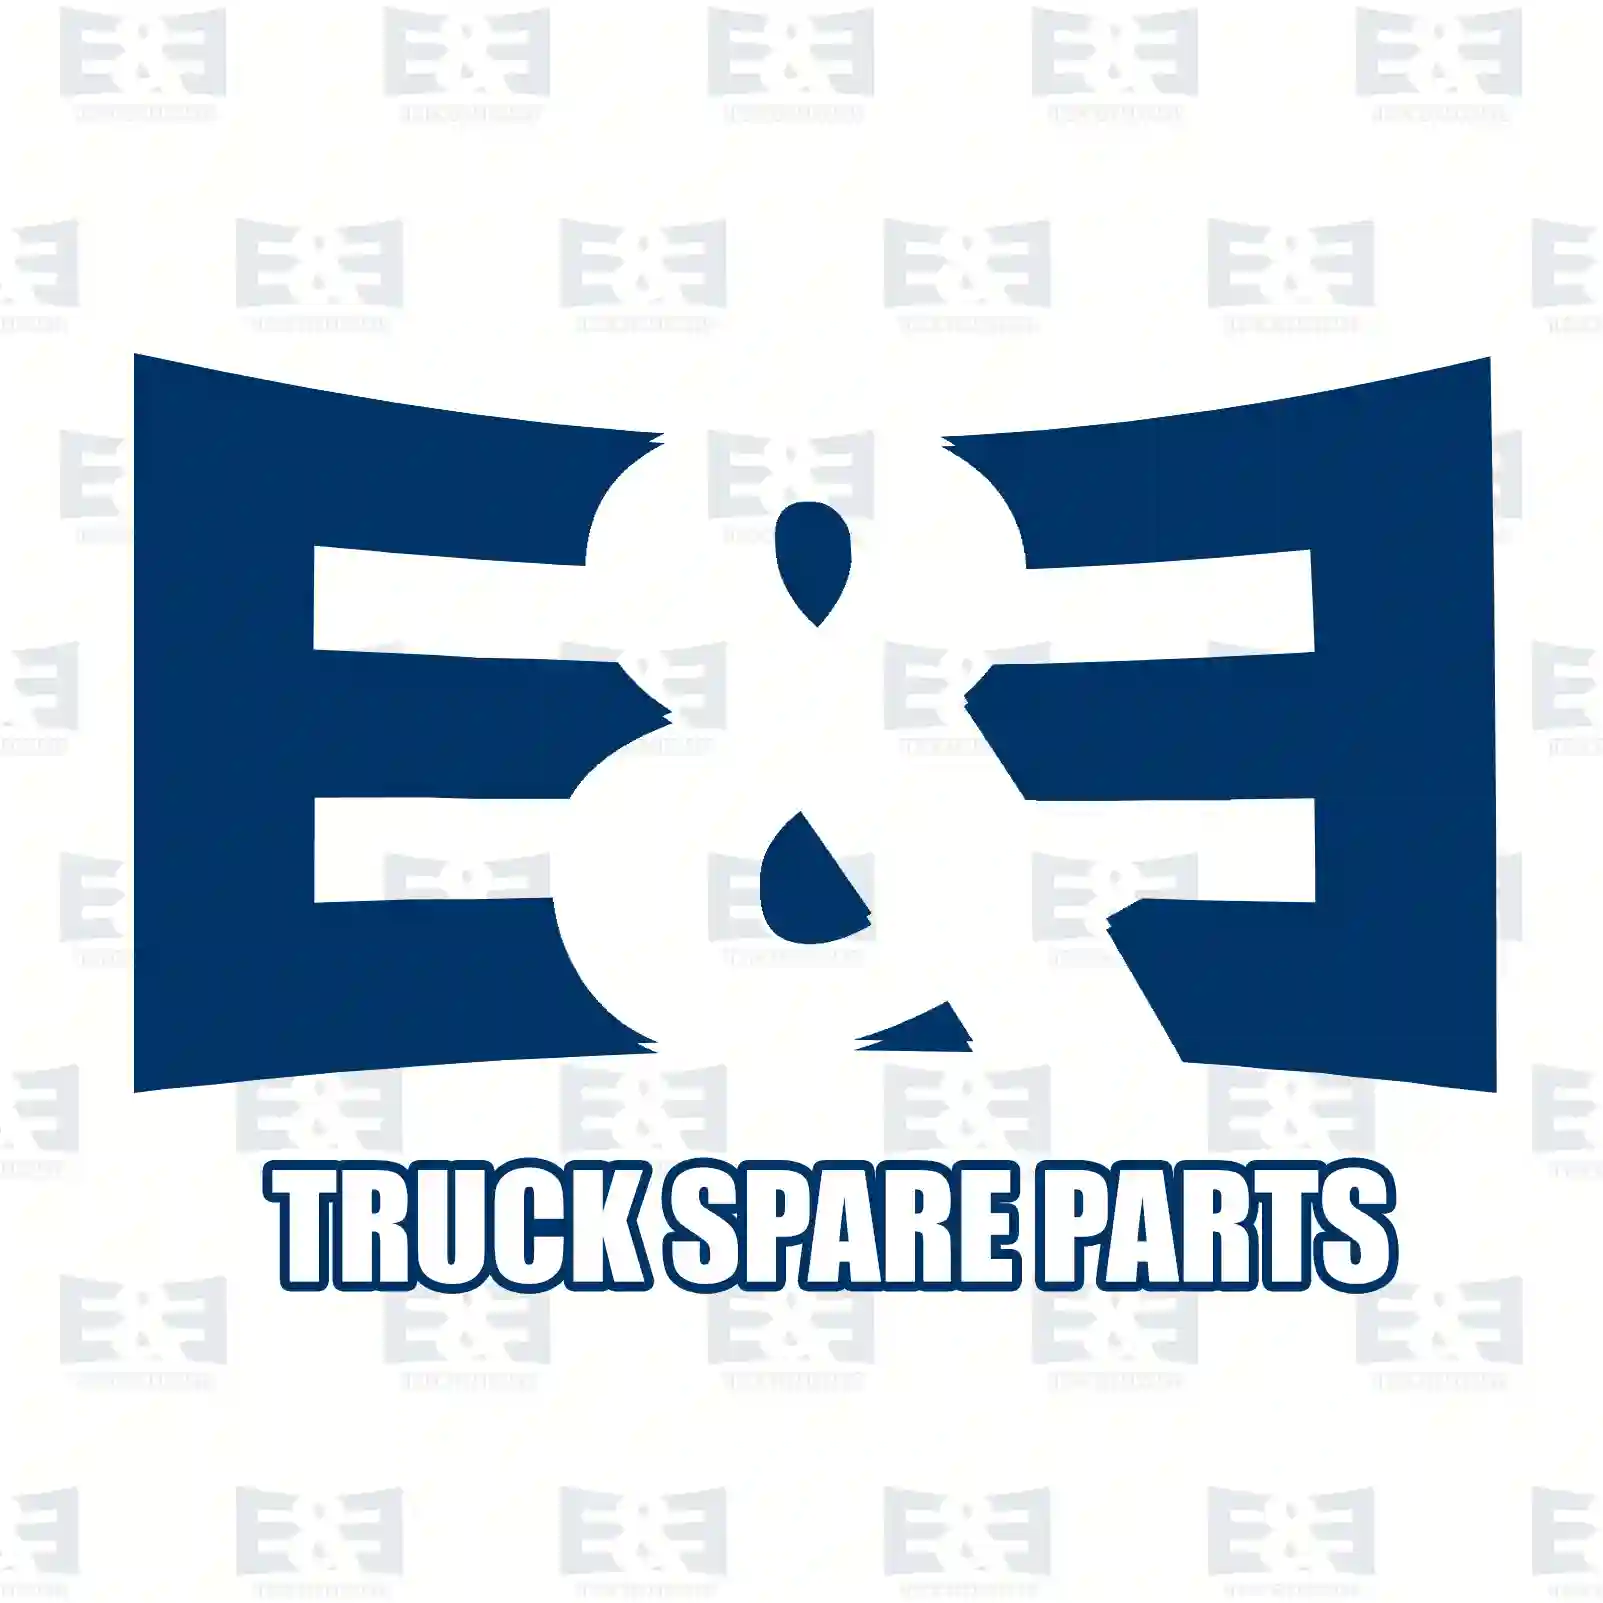 Step well case, right, 2E2289032, 20593735 ||  2E2289032 E&E Truck Spare Parts | Truck Spare Parts, Auotomotive Spare Parts Step well case, right, 2E2289032, 20593735 ||  2E2289032 E&E Truck Spare Parts | Truck Spare Parts, Auotomotive Spare Parts